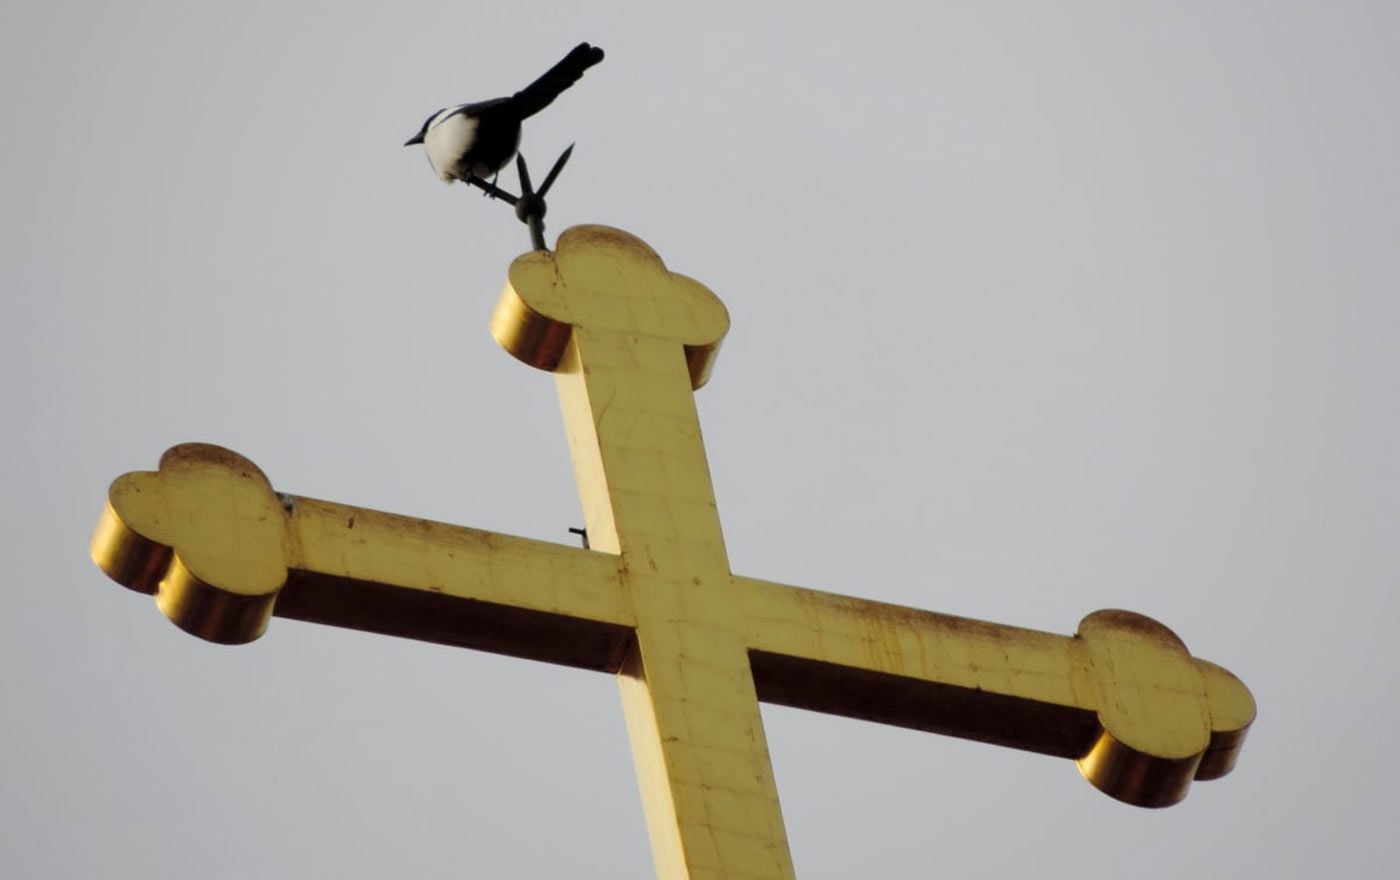 Besonders Vögeln bieten die Kirchtürme einen wichtigen Lebensraum. Foto: pixnio